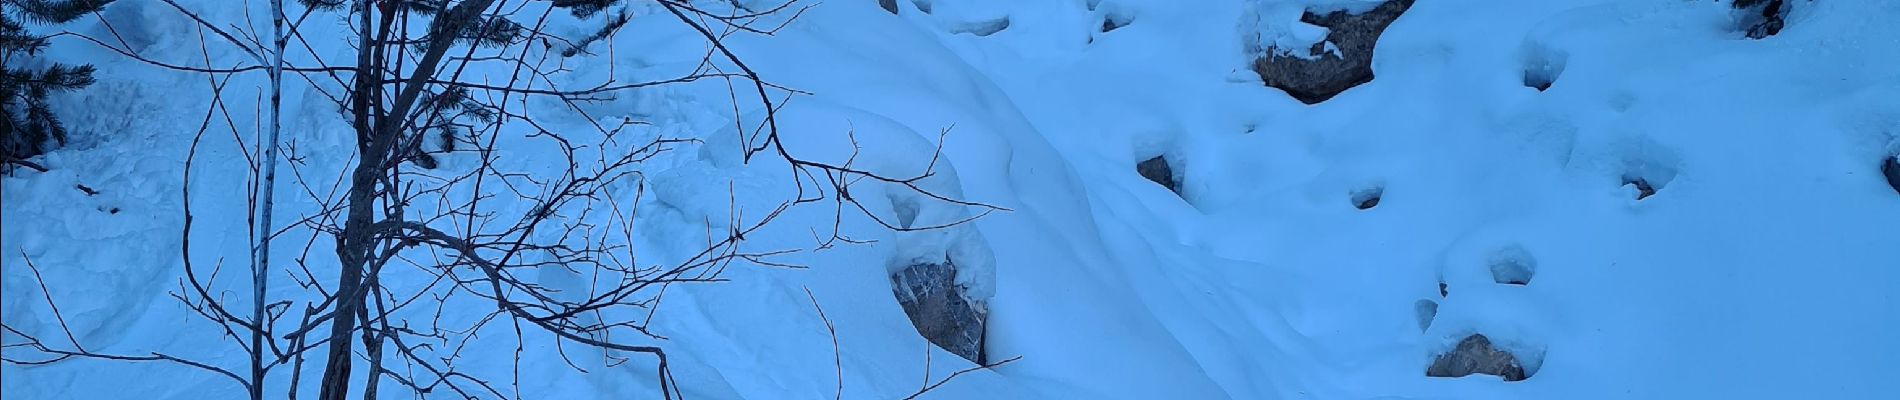 Tour Skiwanderen Cervières - Crêtes de la lauze ou voyage dans les entrailles de terre rouge - Photo